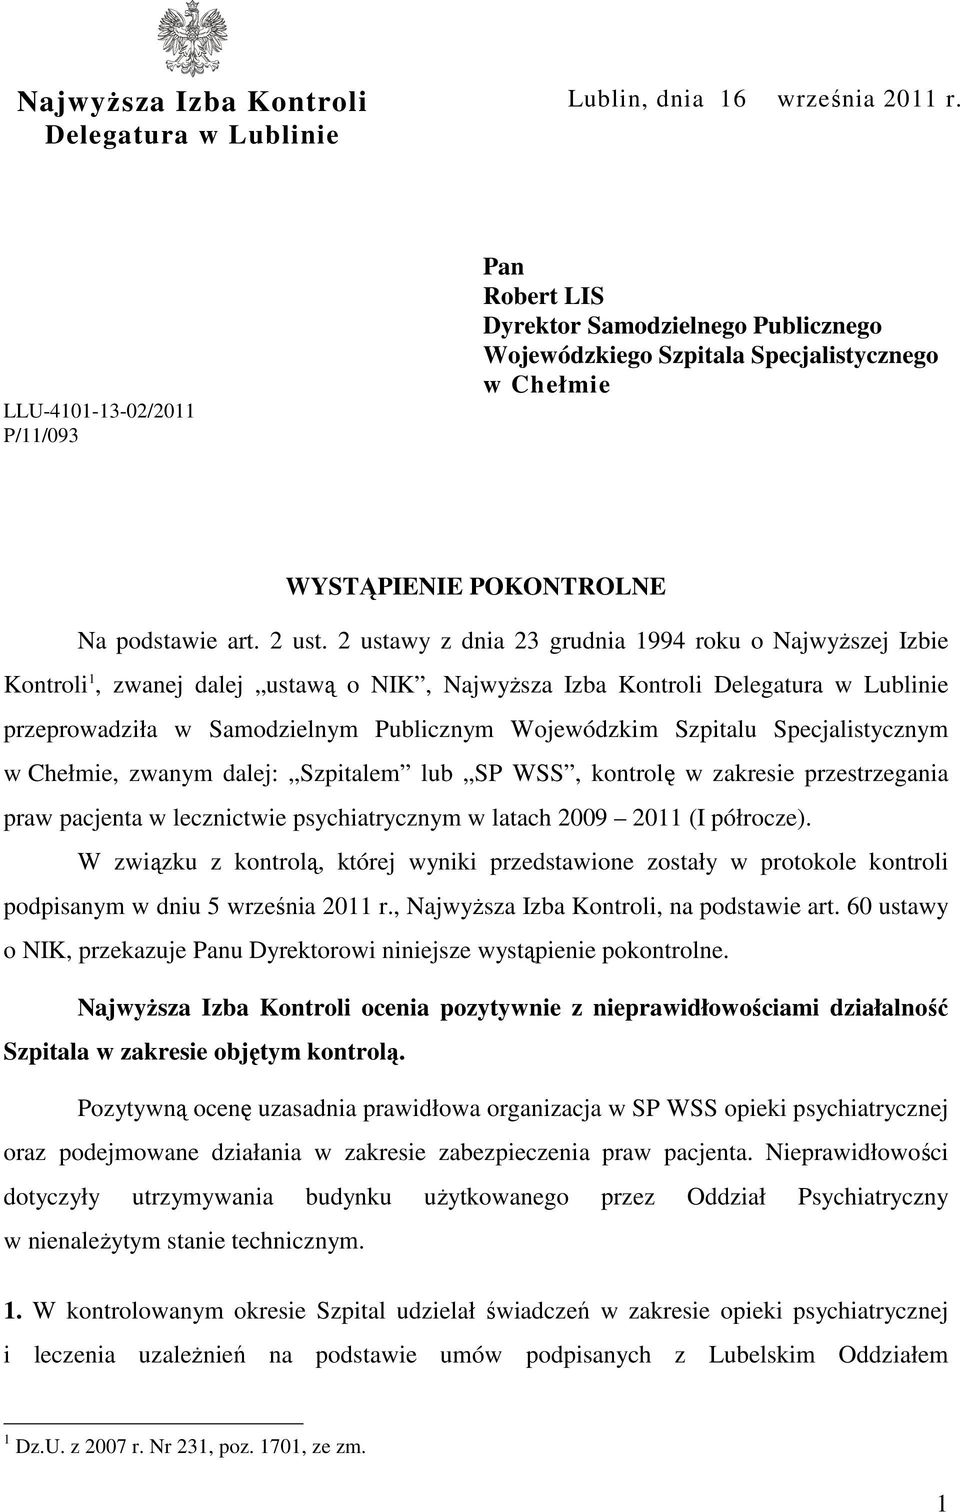 2 ustawy z dnia 23 grudnia 1994 roku o Najwyższej Izbie Kontroli 1, zwanej dalej ustawą o NIK, Najwyższa Izba Kontroli Delegatura w Lublinie przeprowadziła w Samodzielnym Publicznym Wojewódzkim